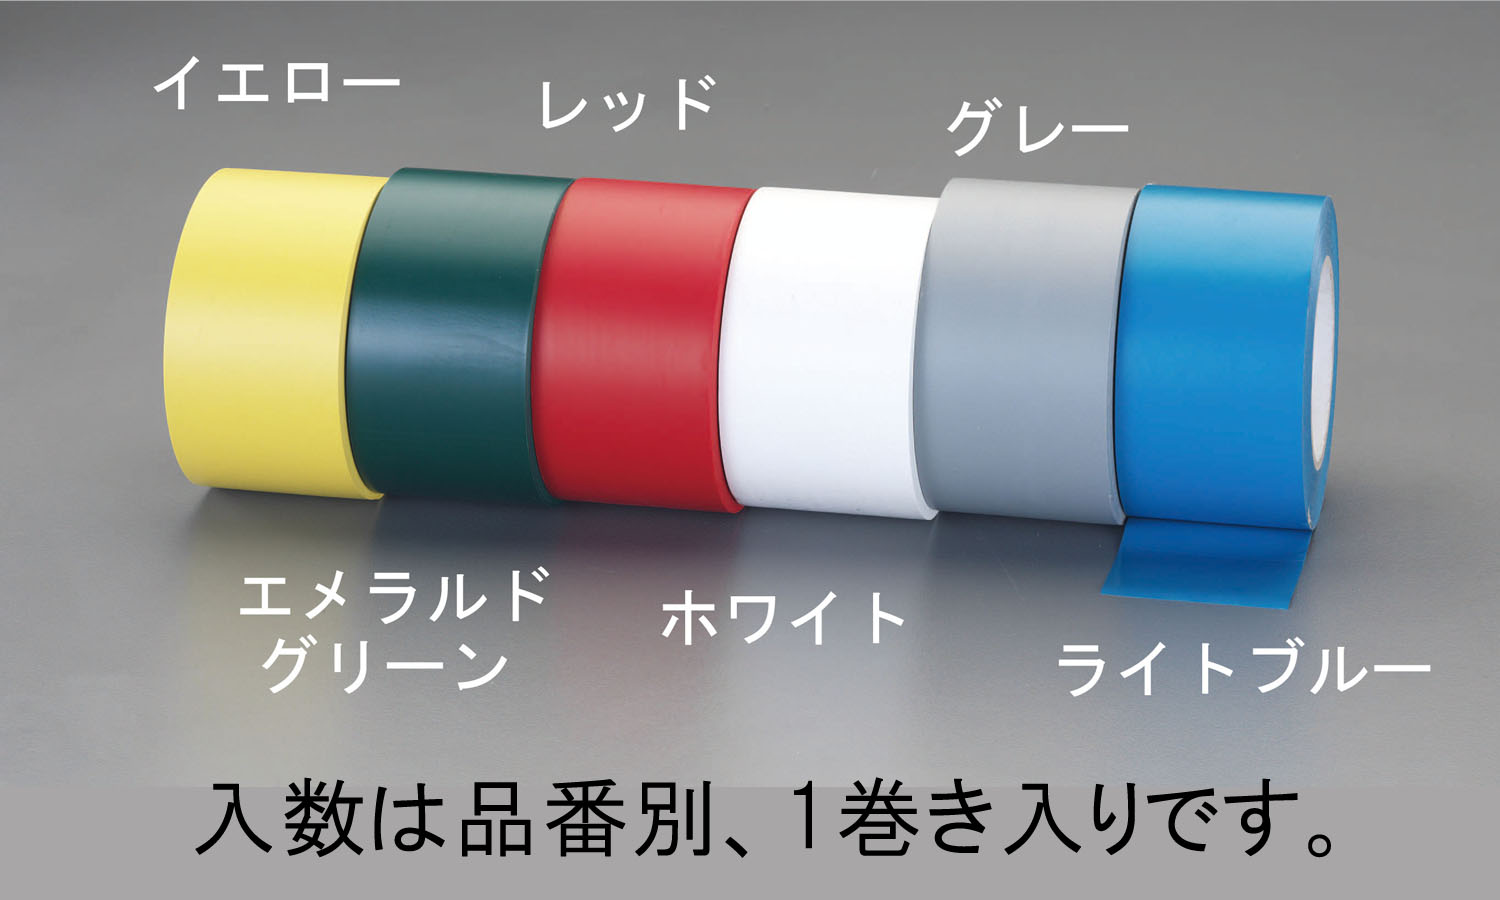 白鳥のクリスタルリング 日本緑十字社 ガードテープ(ラインテープ) 白